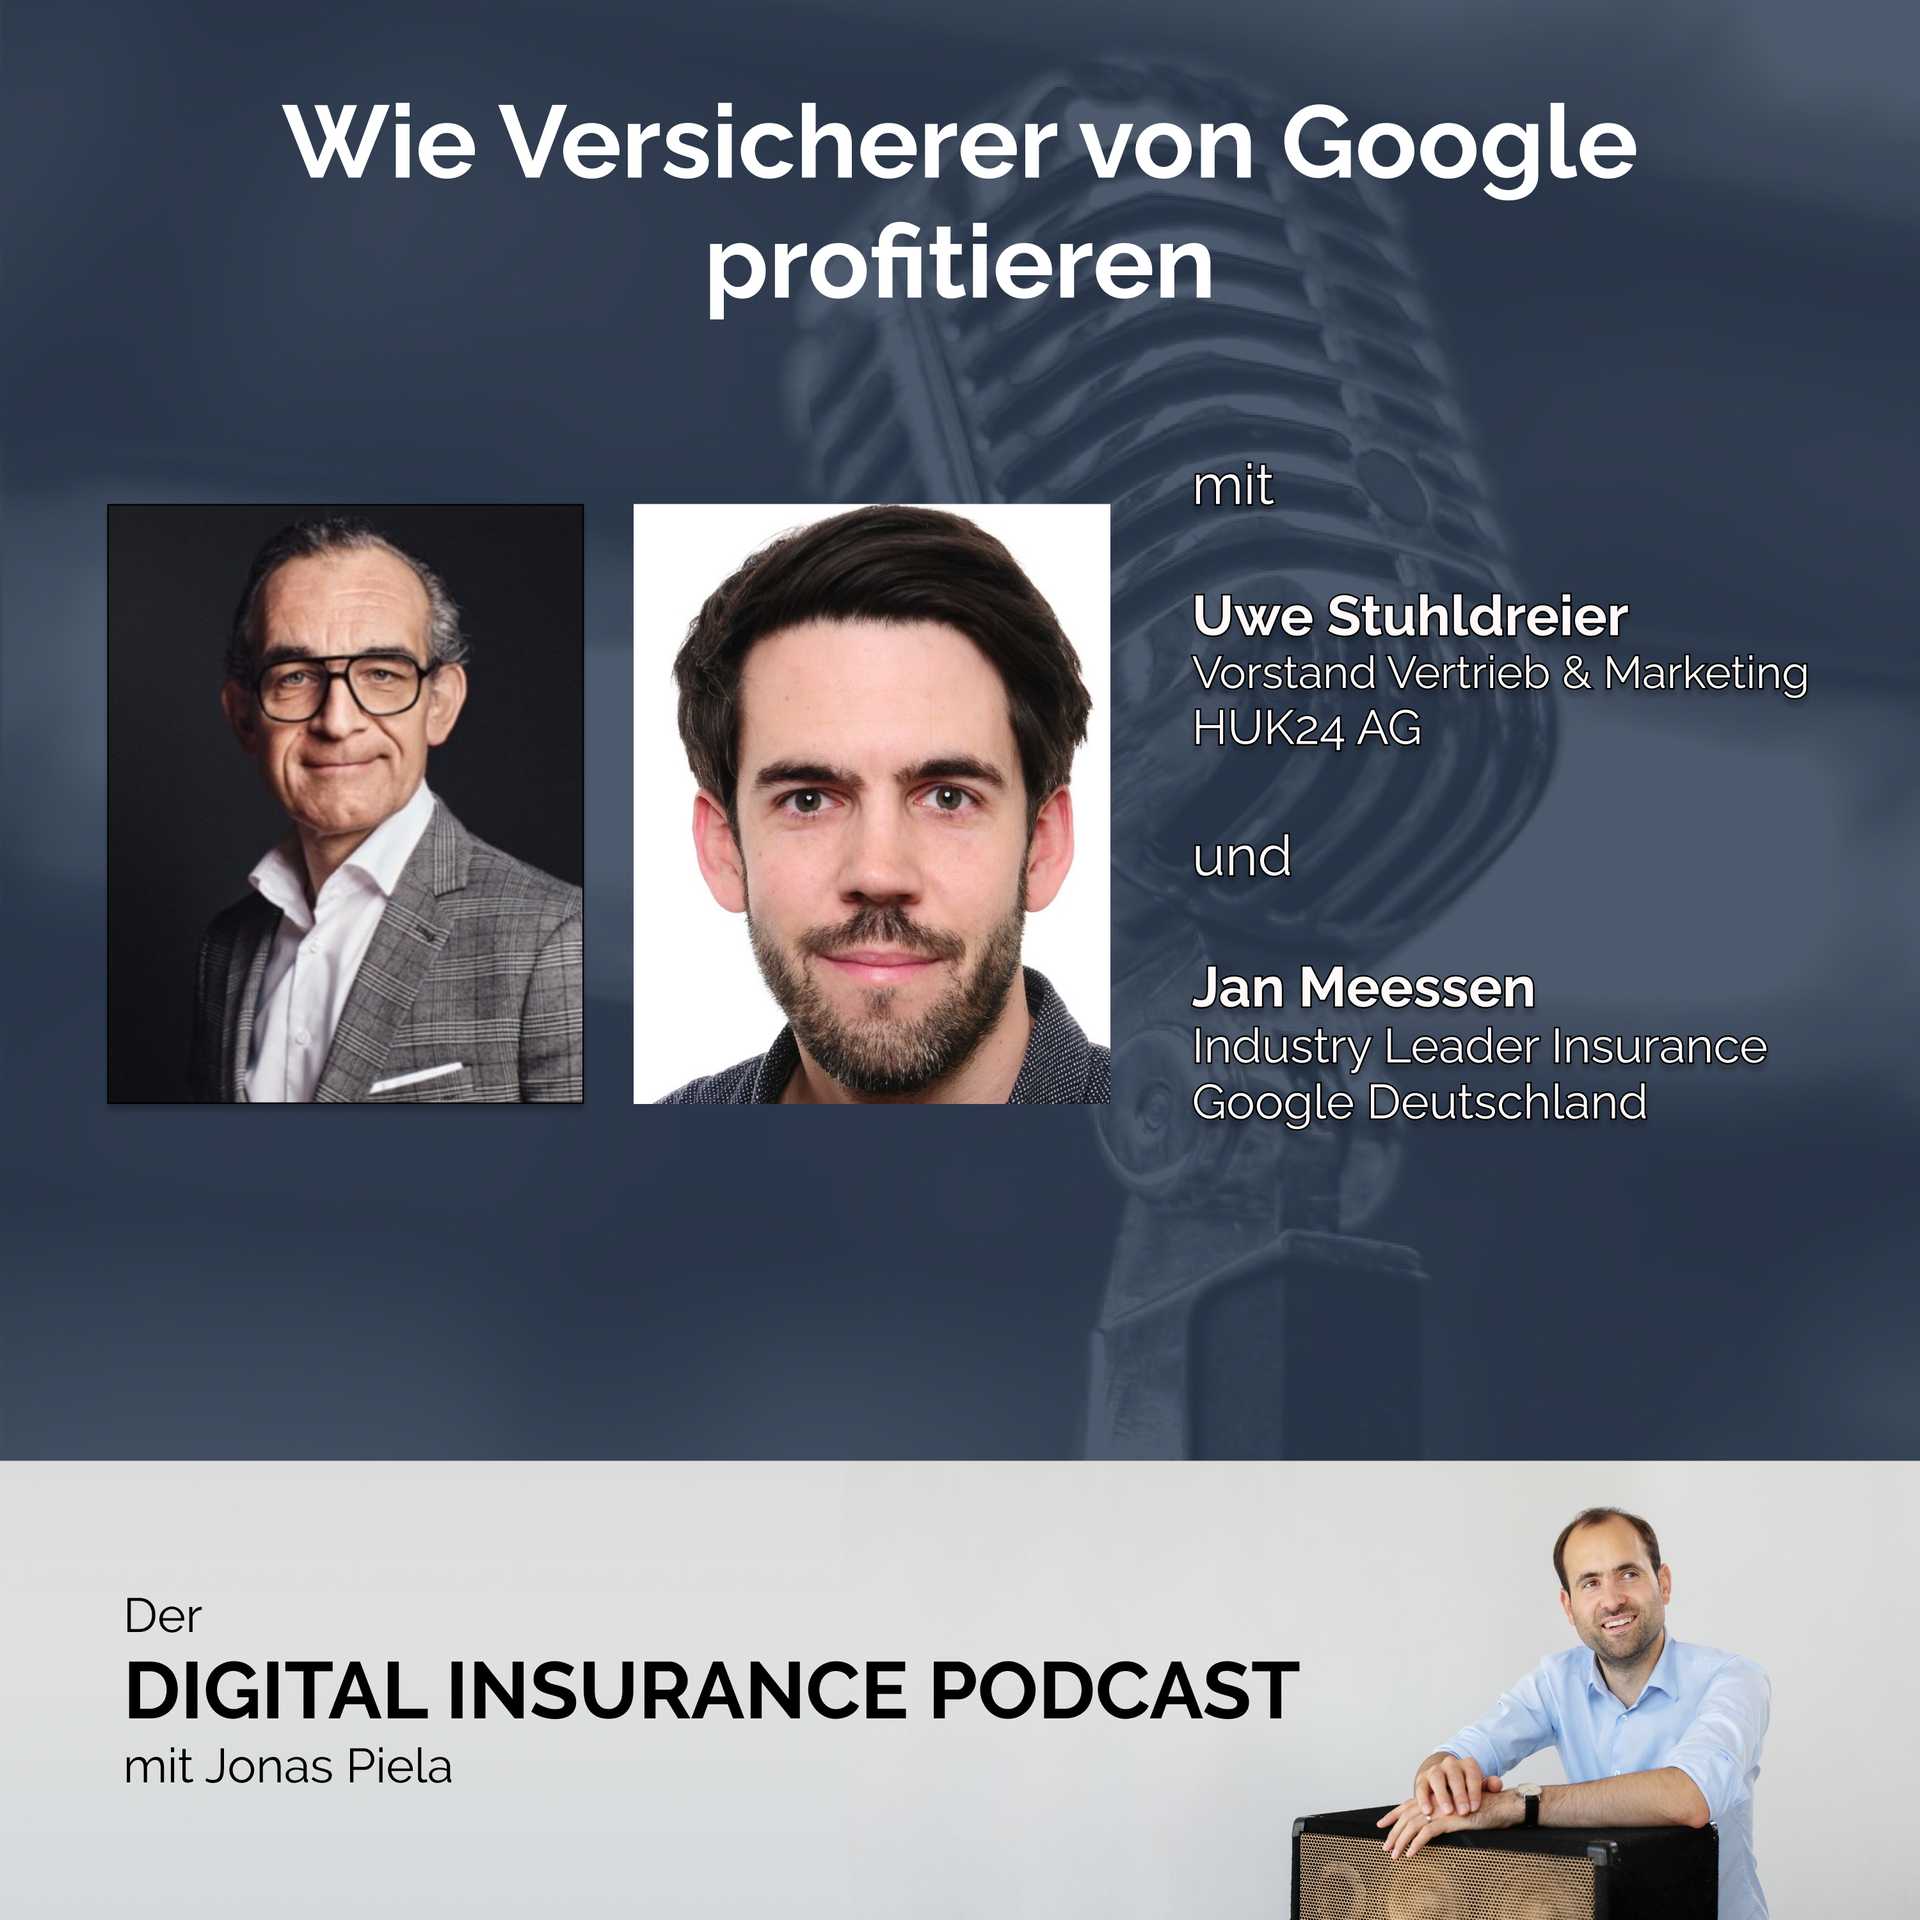 Wie Versicherer von Google profitieren mit Uwe Stuhldreier und Jan Meessen 